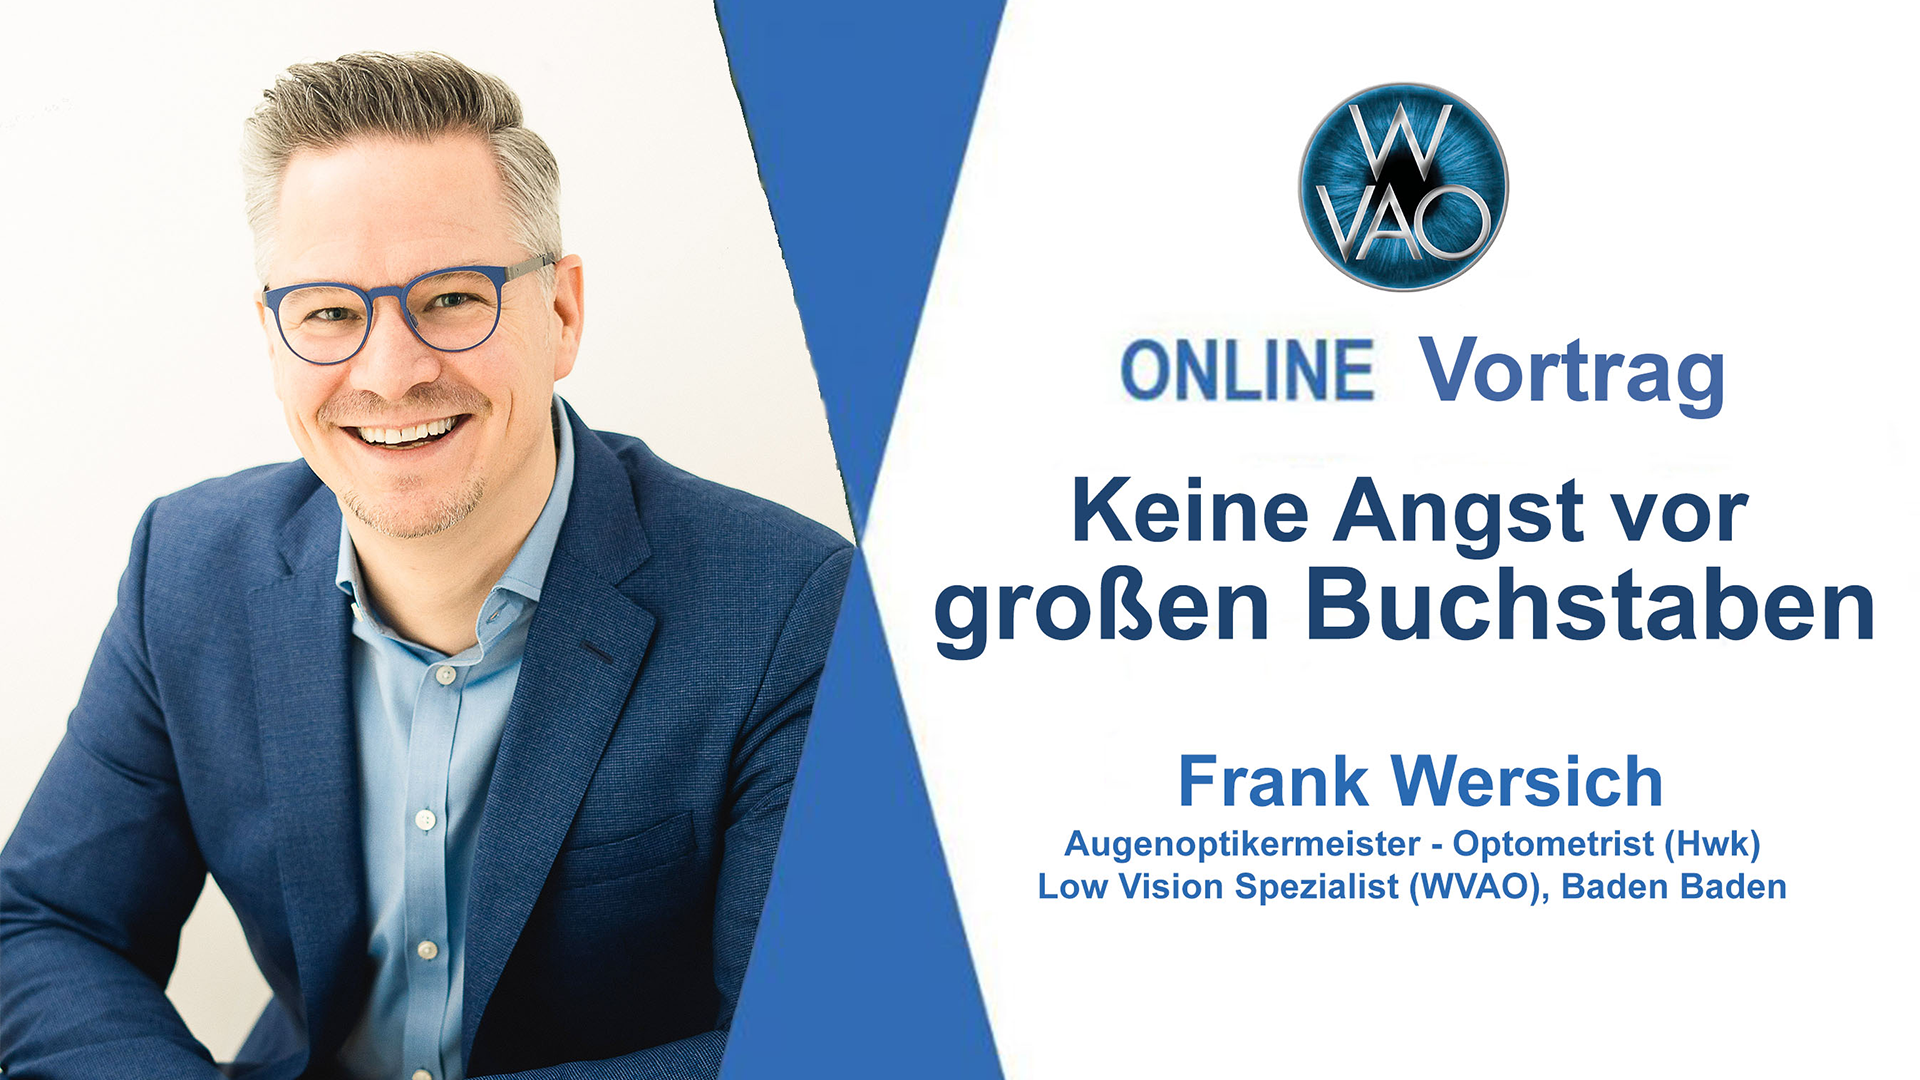 WVAO Vortrag Frank Wersich